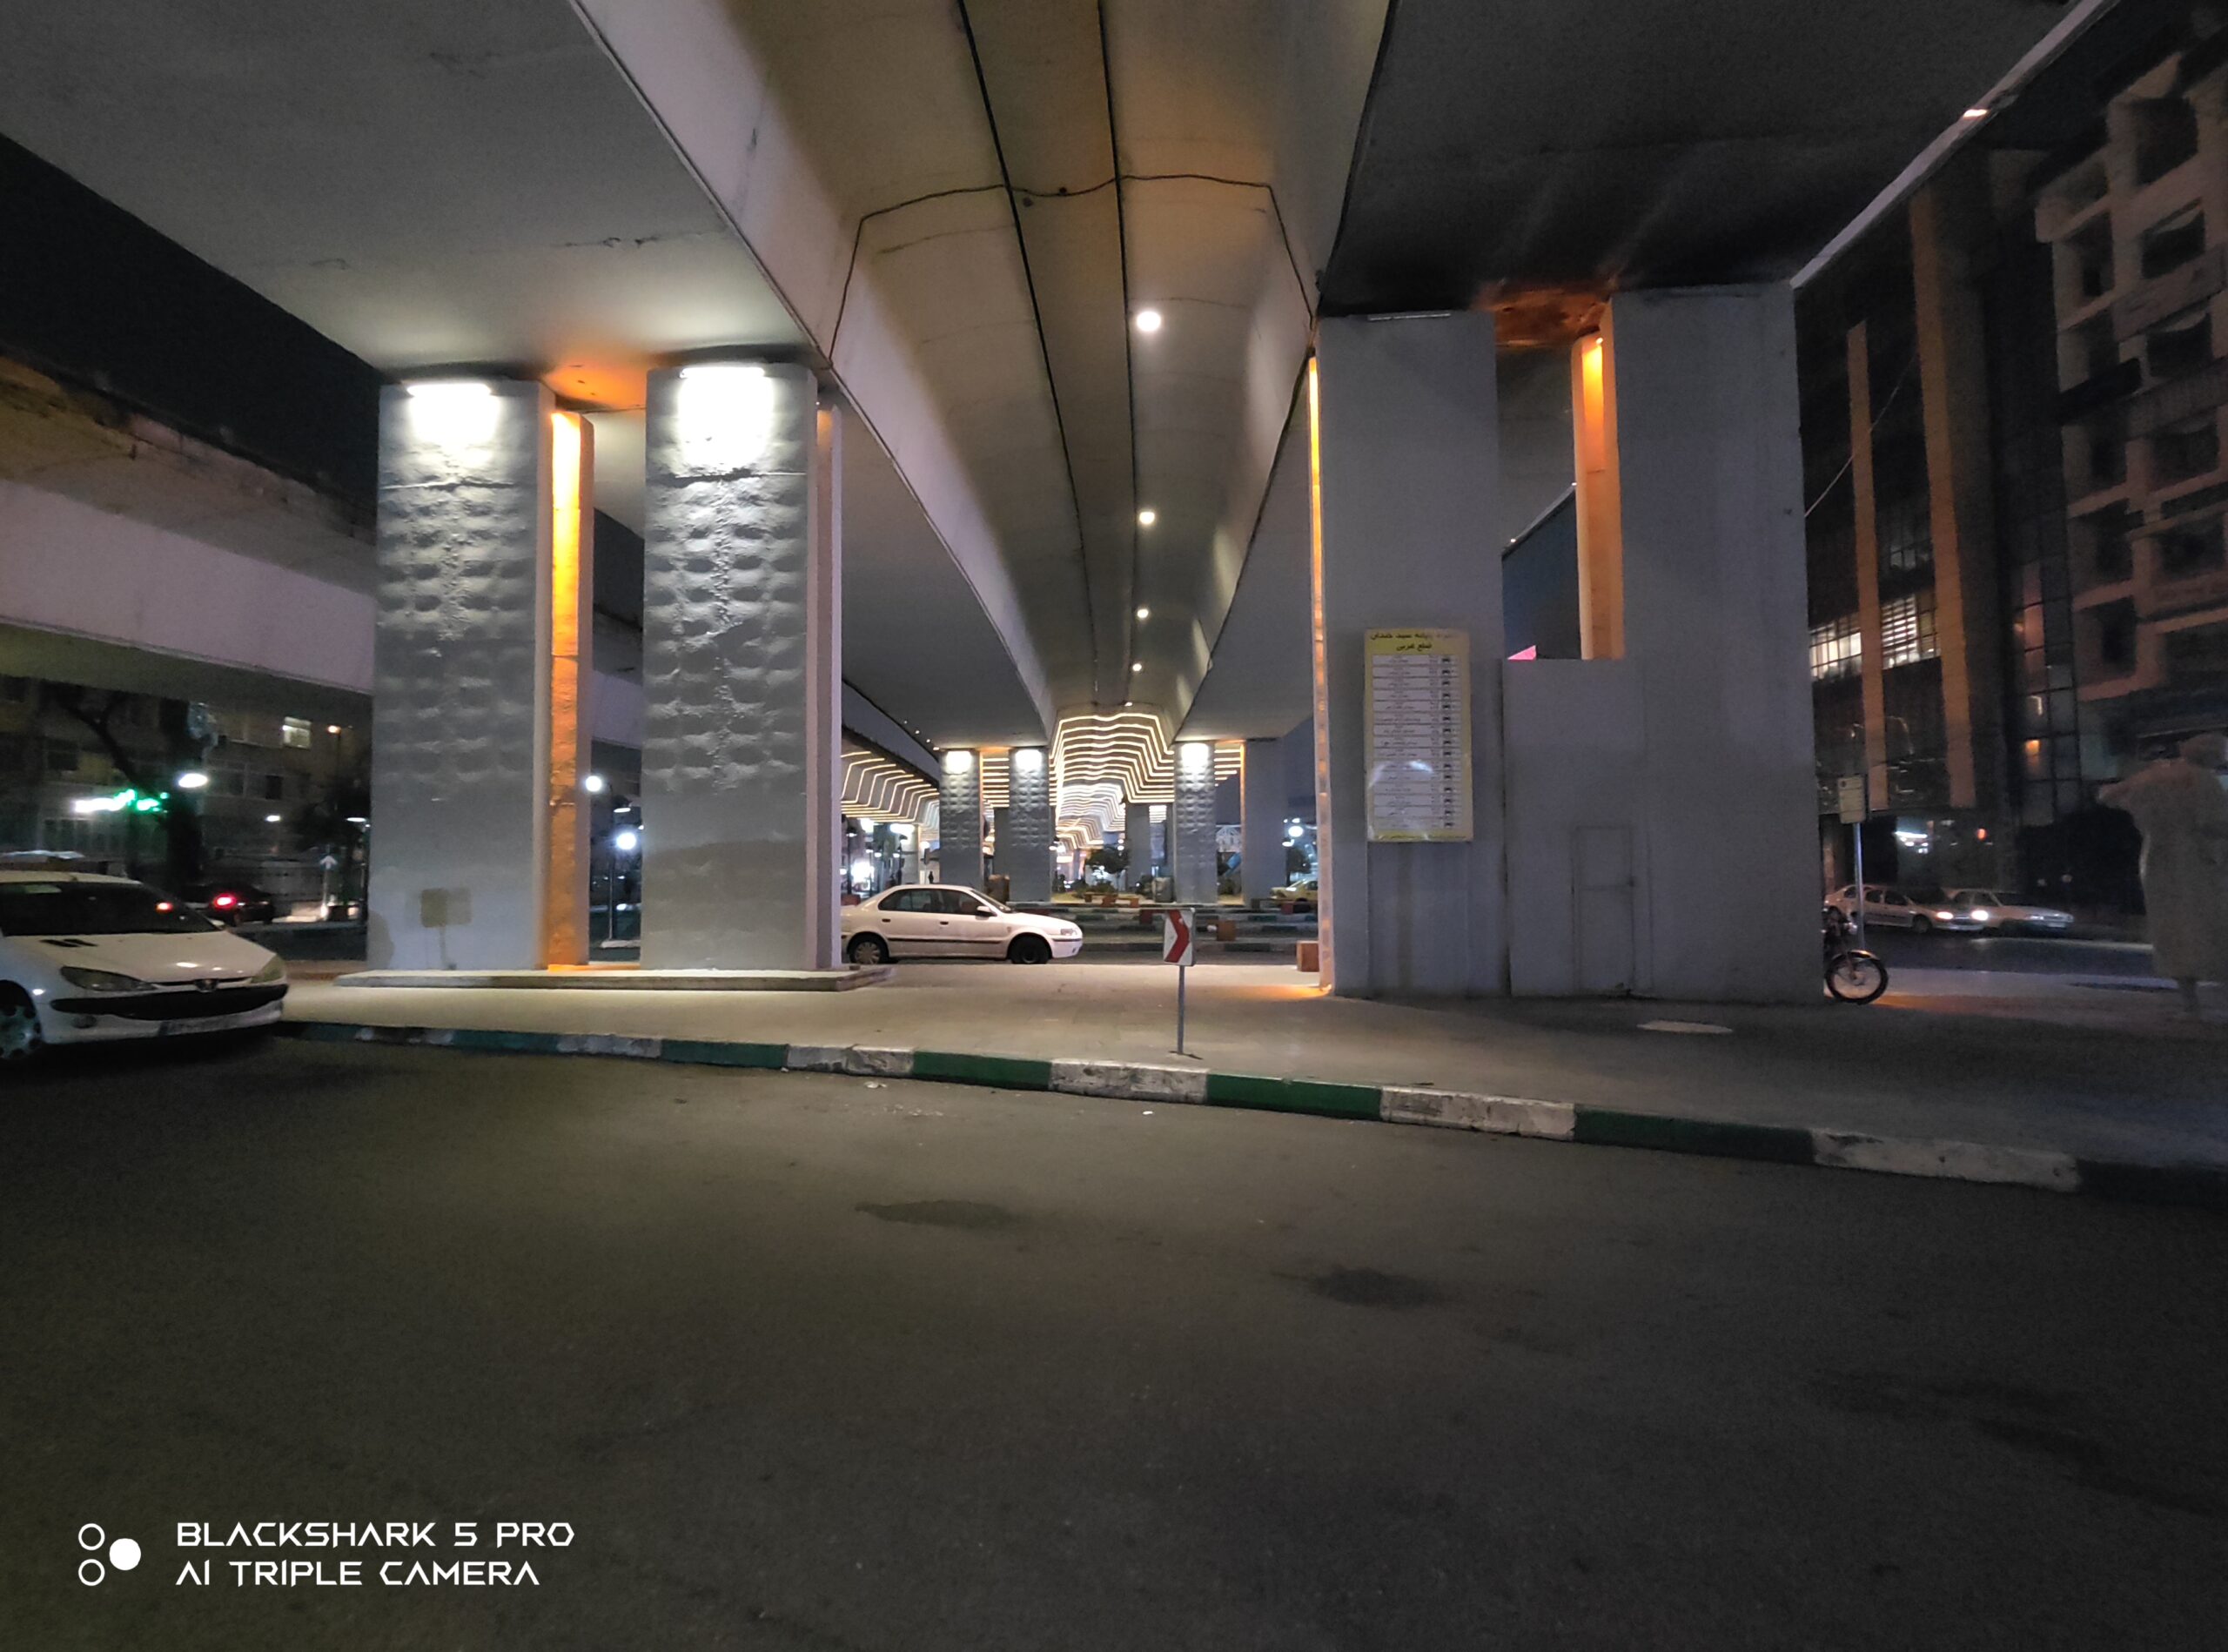 عکاسی اولترا واید با بلک شارک 5 پرو در شب